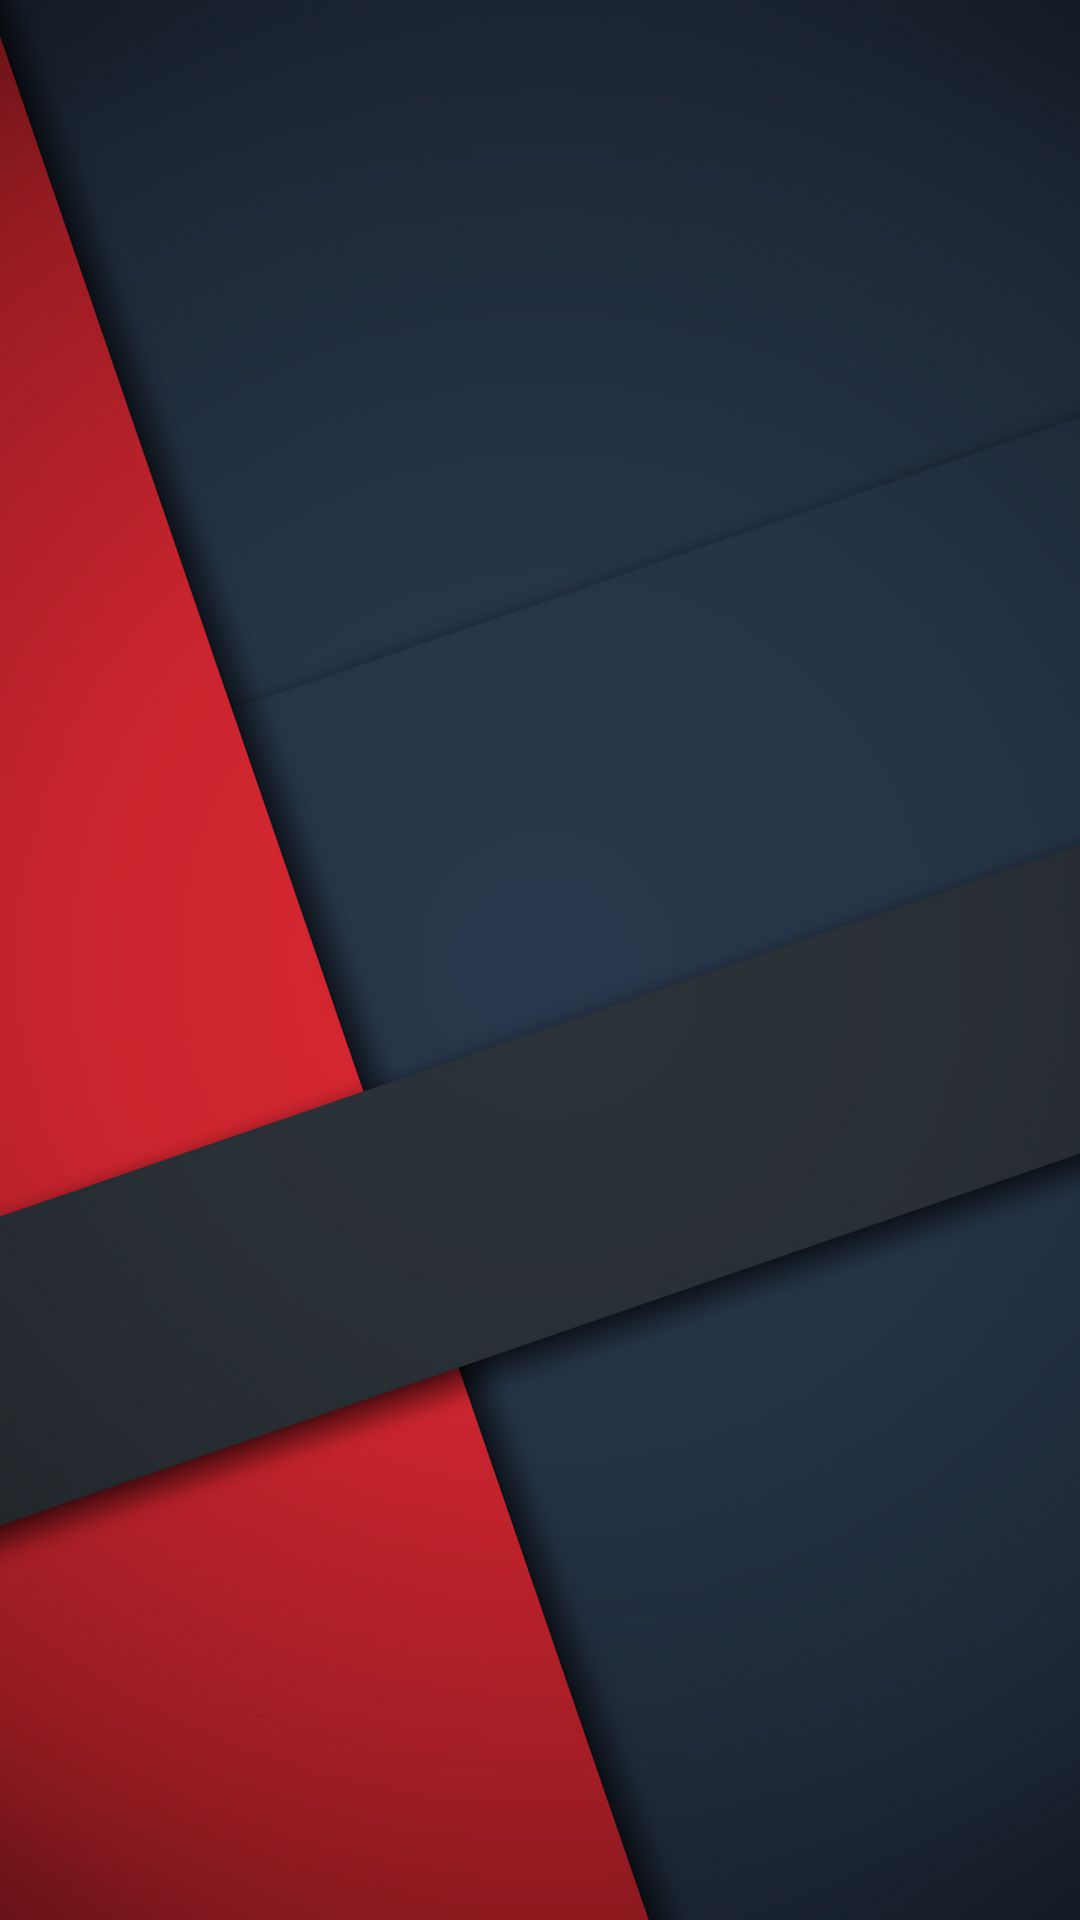 android material design wallpaper,rot,blau,schwarz,linie,orange